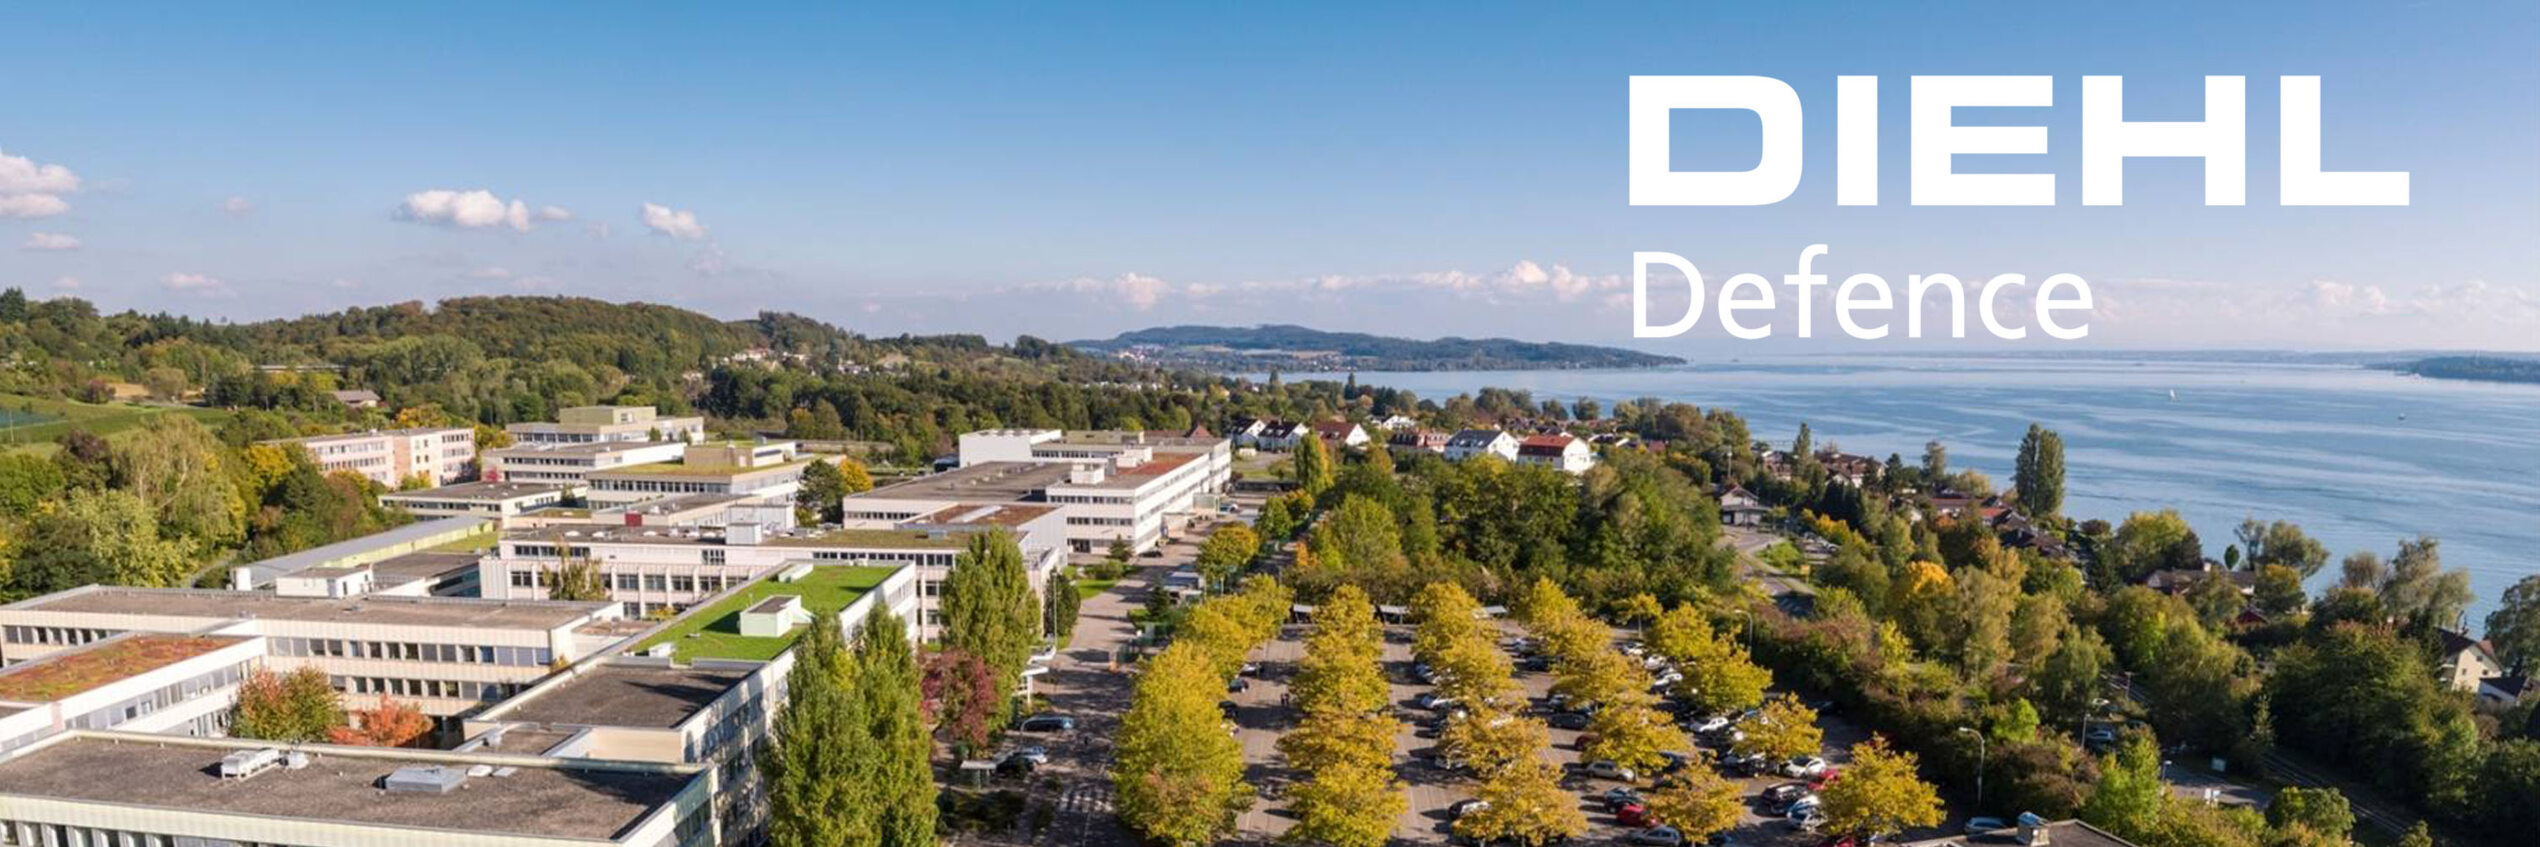 Diehl Defence erwirbt Grundstück zur Erweiterung seines Unternehmenssitzes in Überlingen